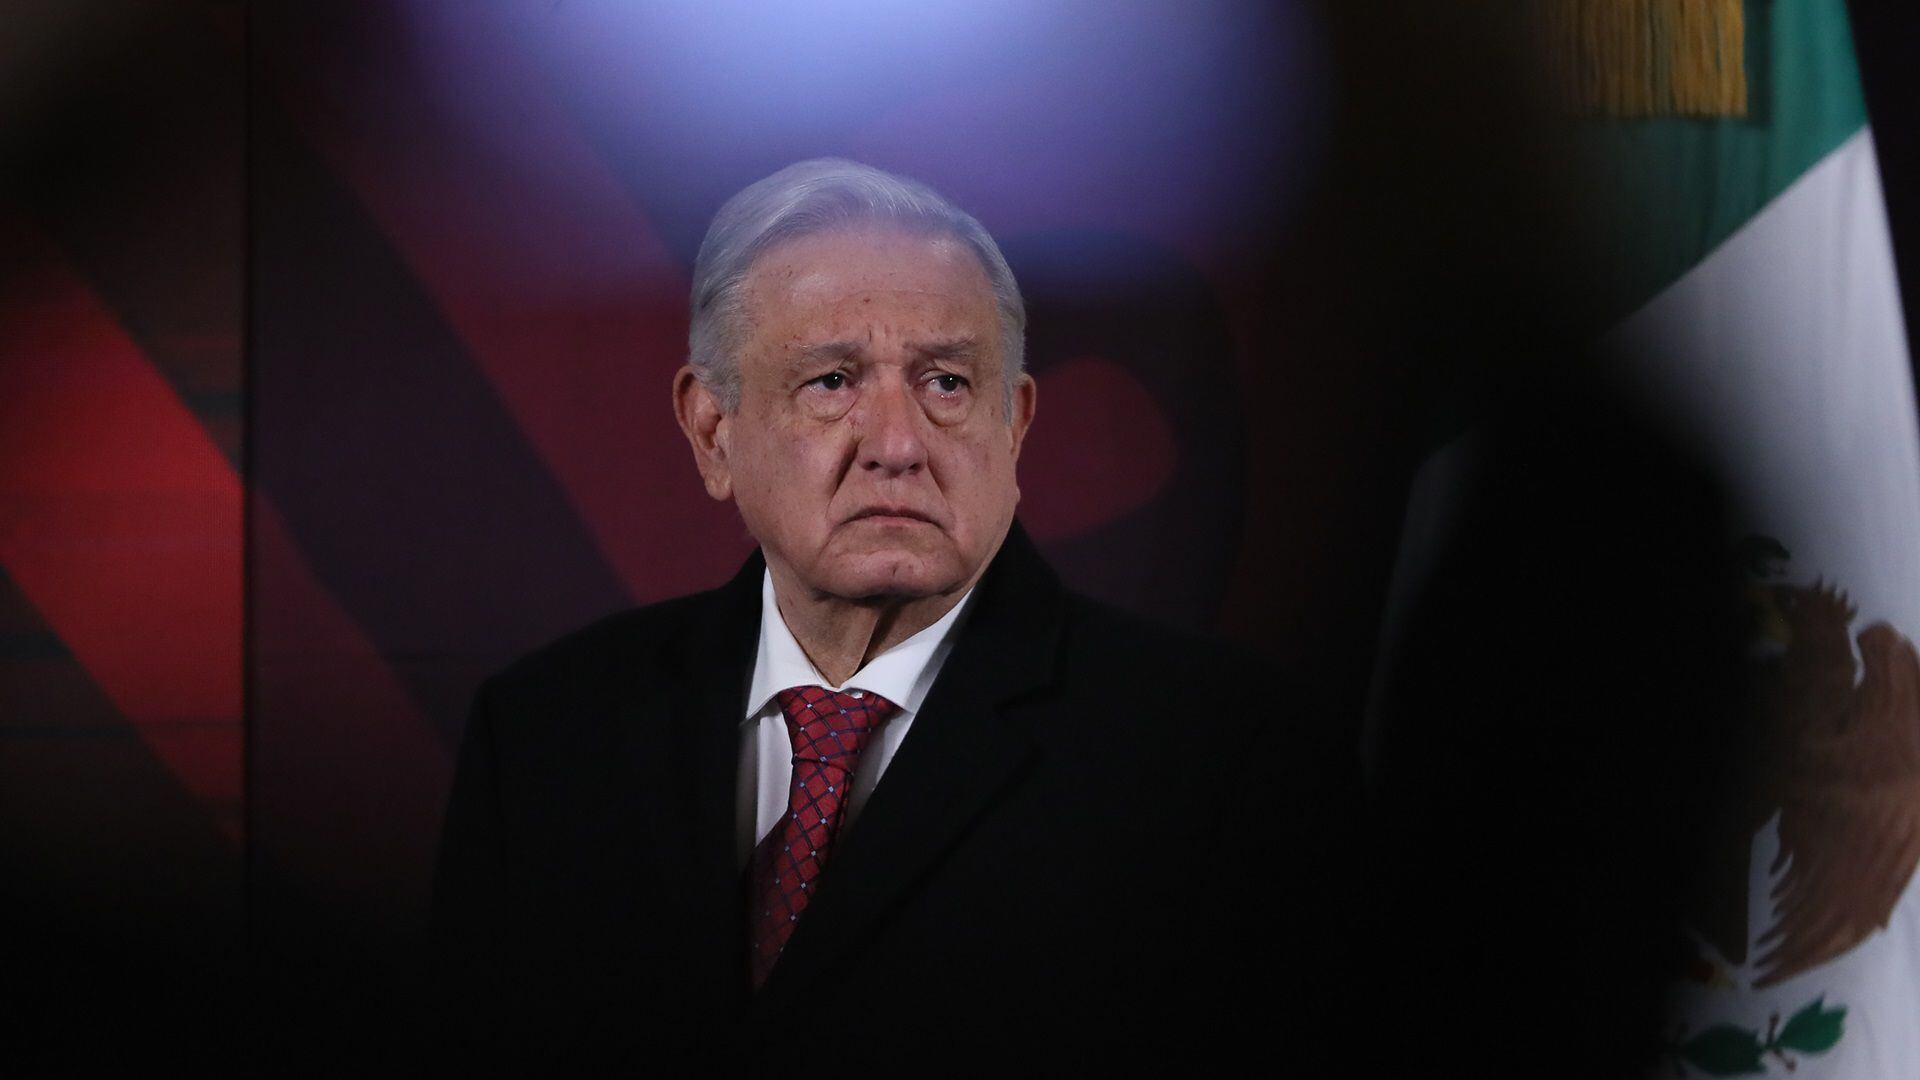 El presidente López Obrador hizo frente a las recomendaciones emitidas Consejo de Derechos Humanos de la ONU